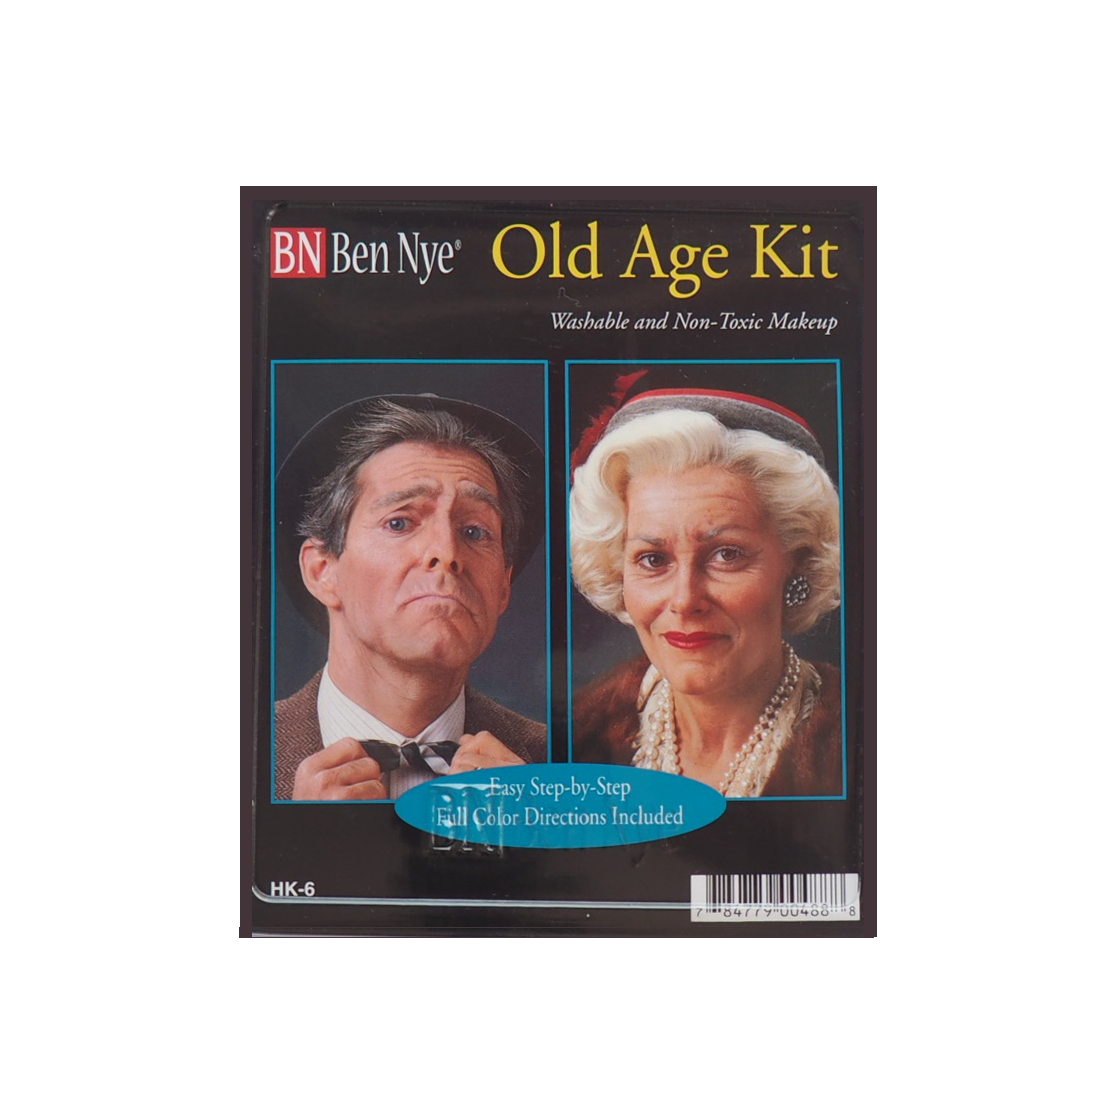 Ben Nye Old Age Complete Makeup Kit